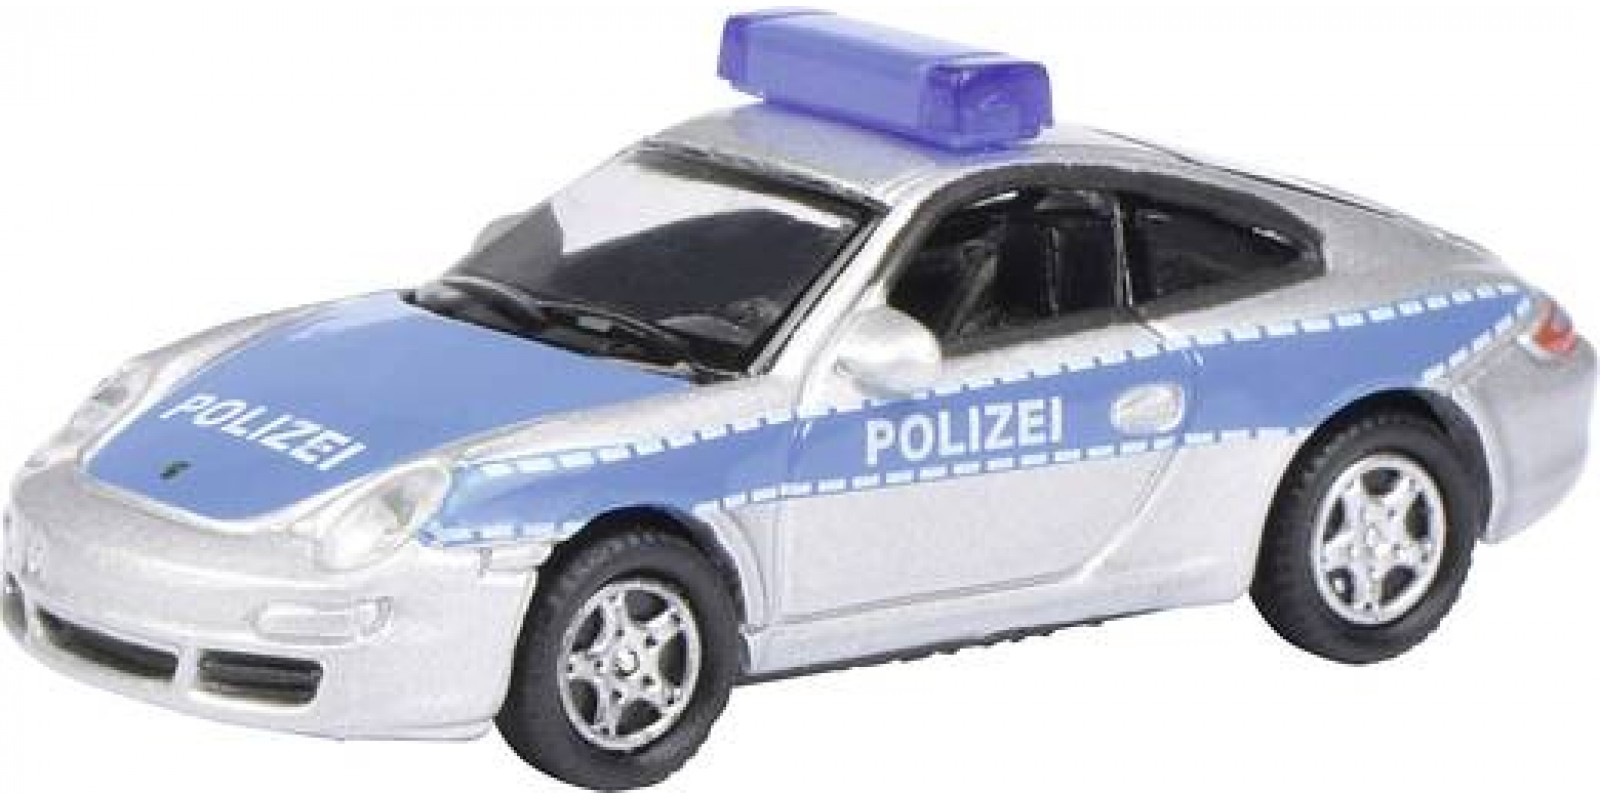 SC452801000 H0 Porsche 911 Polizei